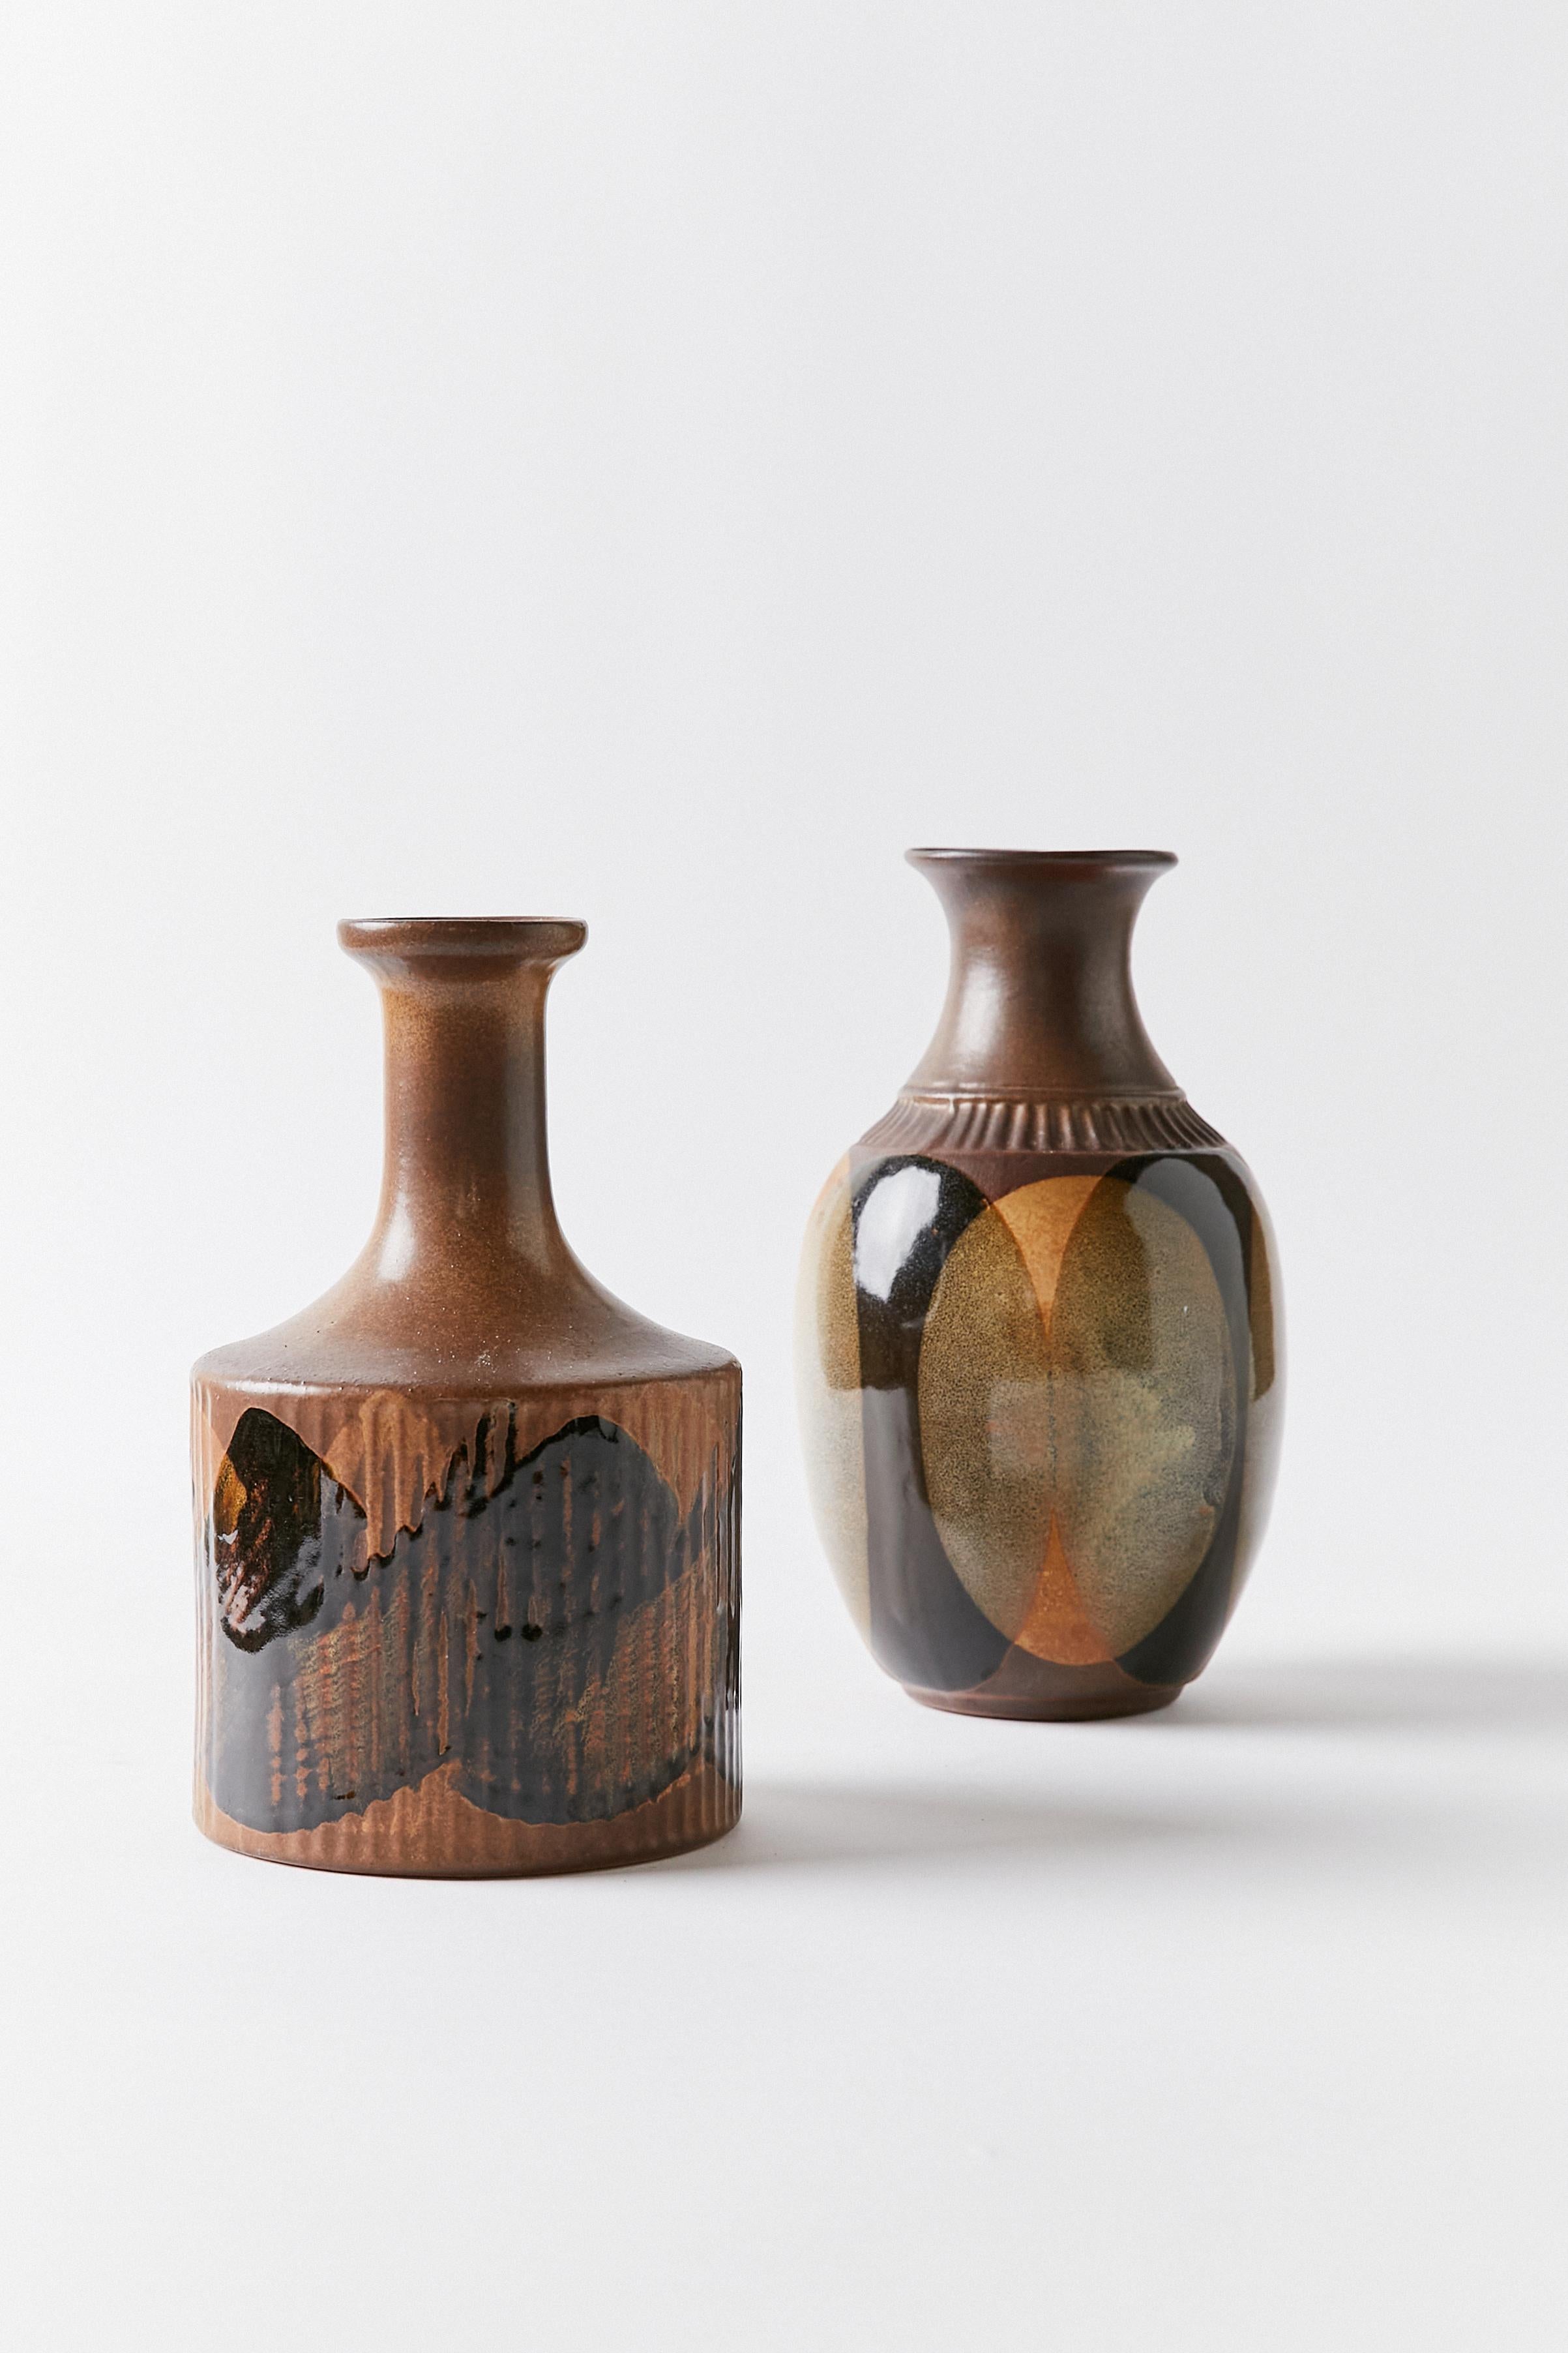 Ensemble de deux vases contemporains en céramique décorés dans différentes nuances de brun, noir, vert sec et ocre.

VASE 1
HAUTEUR 10 IN / 25.4 CM
LARGEUR 6 IN / 15.24 CM
PROFONDEUR 6 IN / 15.24 CM
VASE 2
HAUTEUR 9.25 IN / 23.50 CM
LARGEUR 5.5 IN /